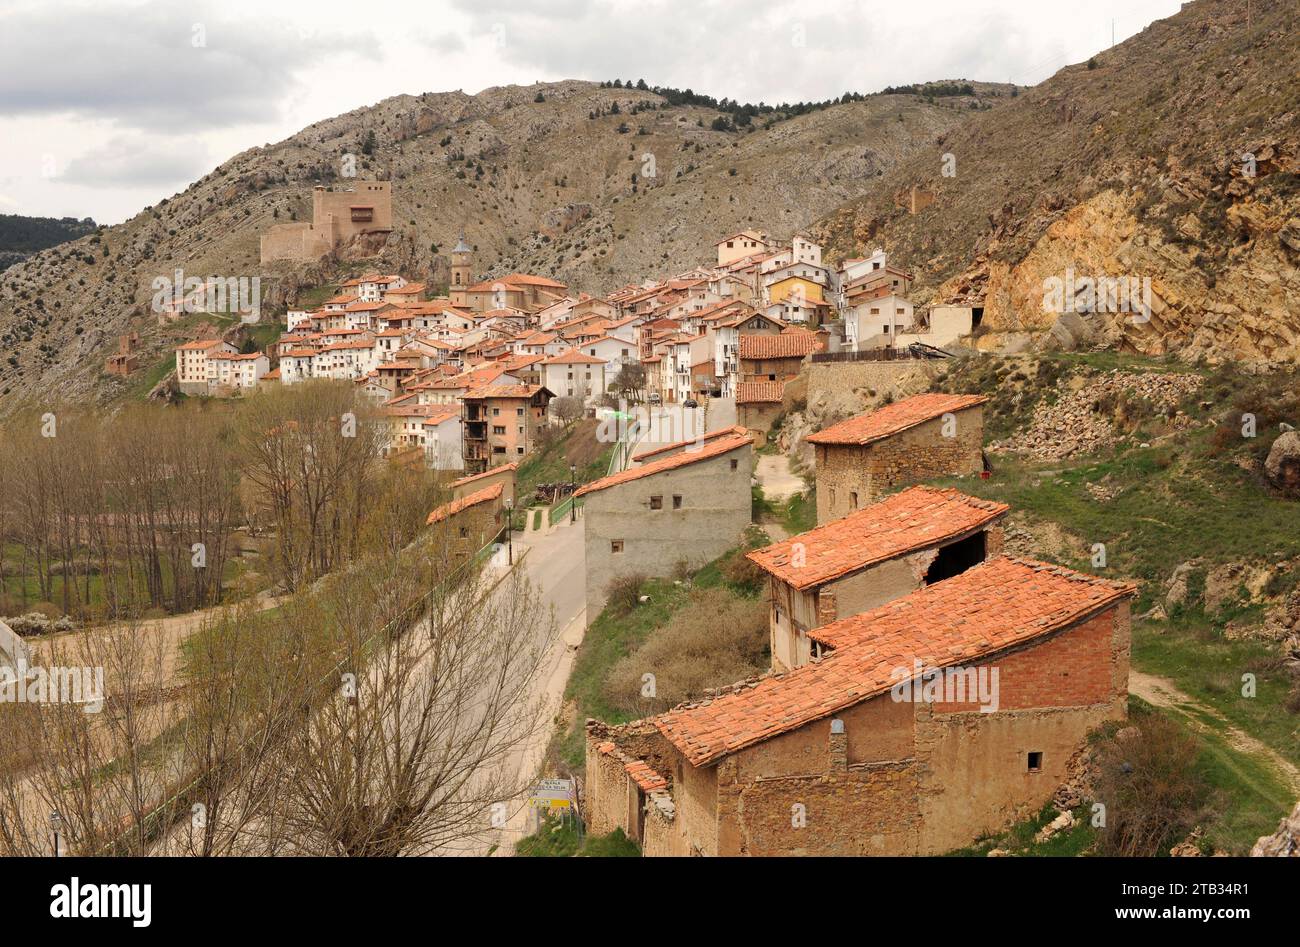 Alcala de la Selva, Gudar-Javalambre region. Teruel province, Aragon, Spain. Stock Photo